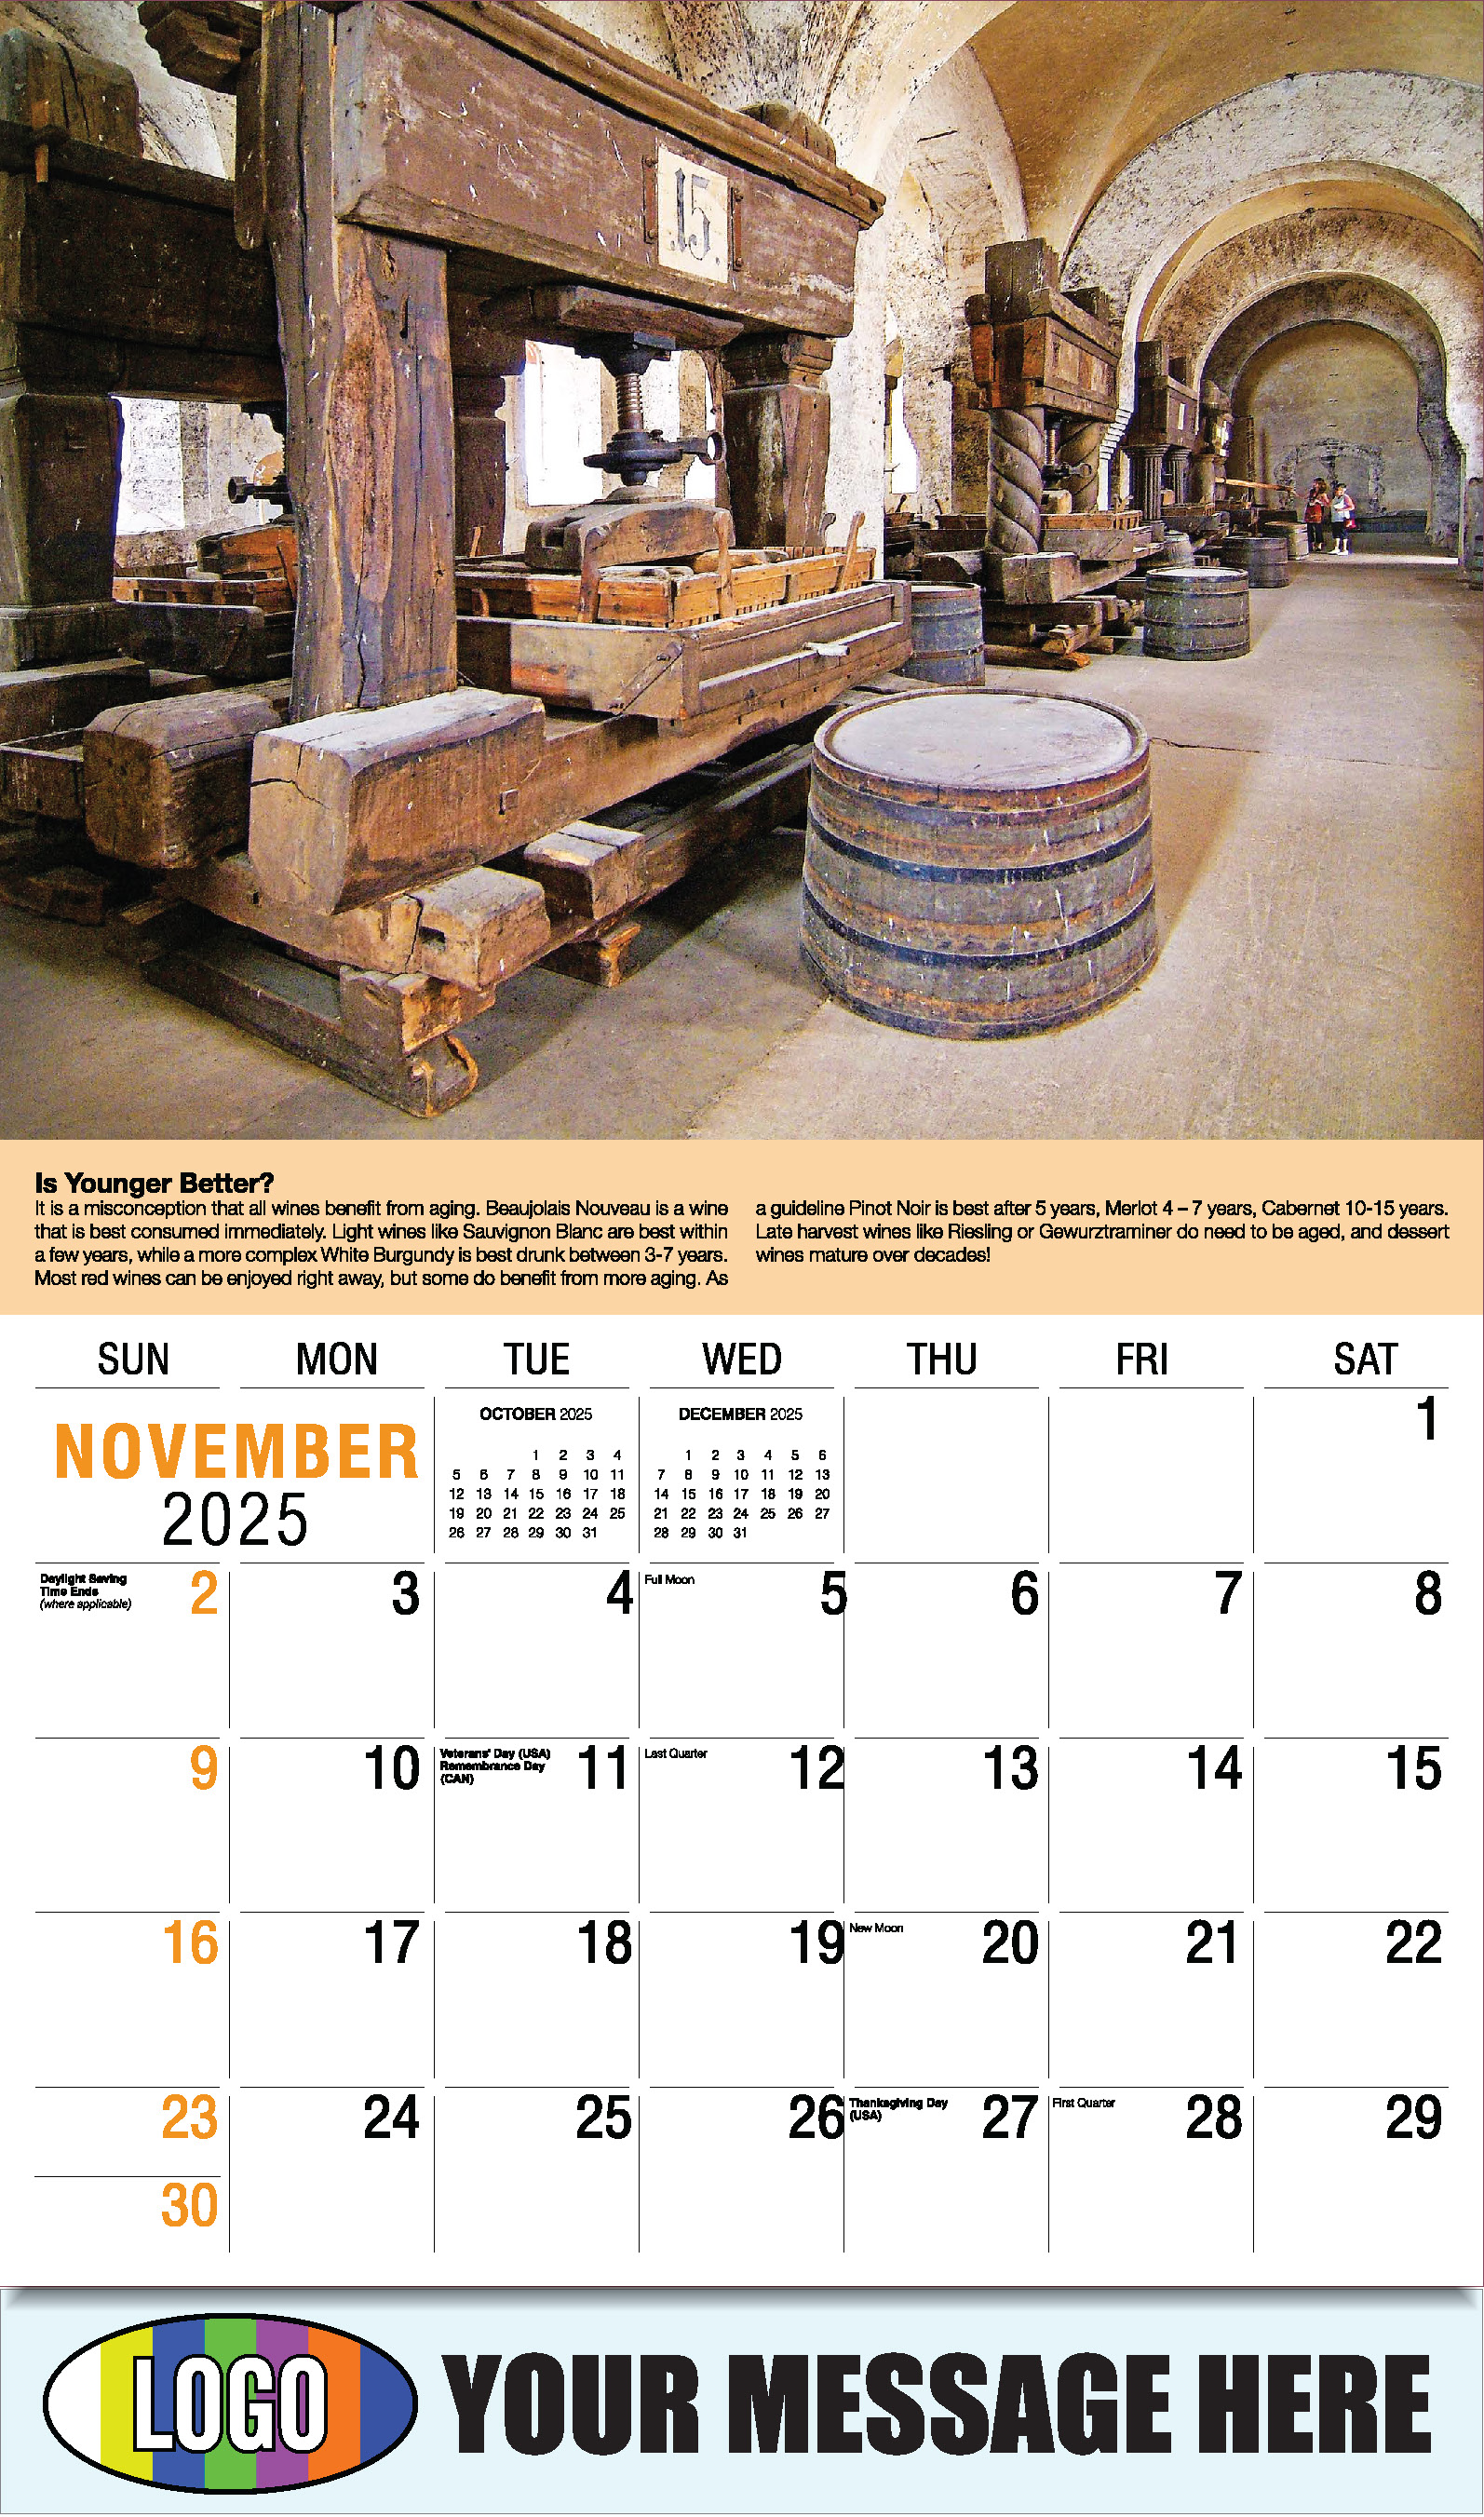 Vintages - Wine Tips 2025 Business Promo Calendar - November